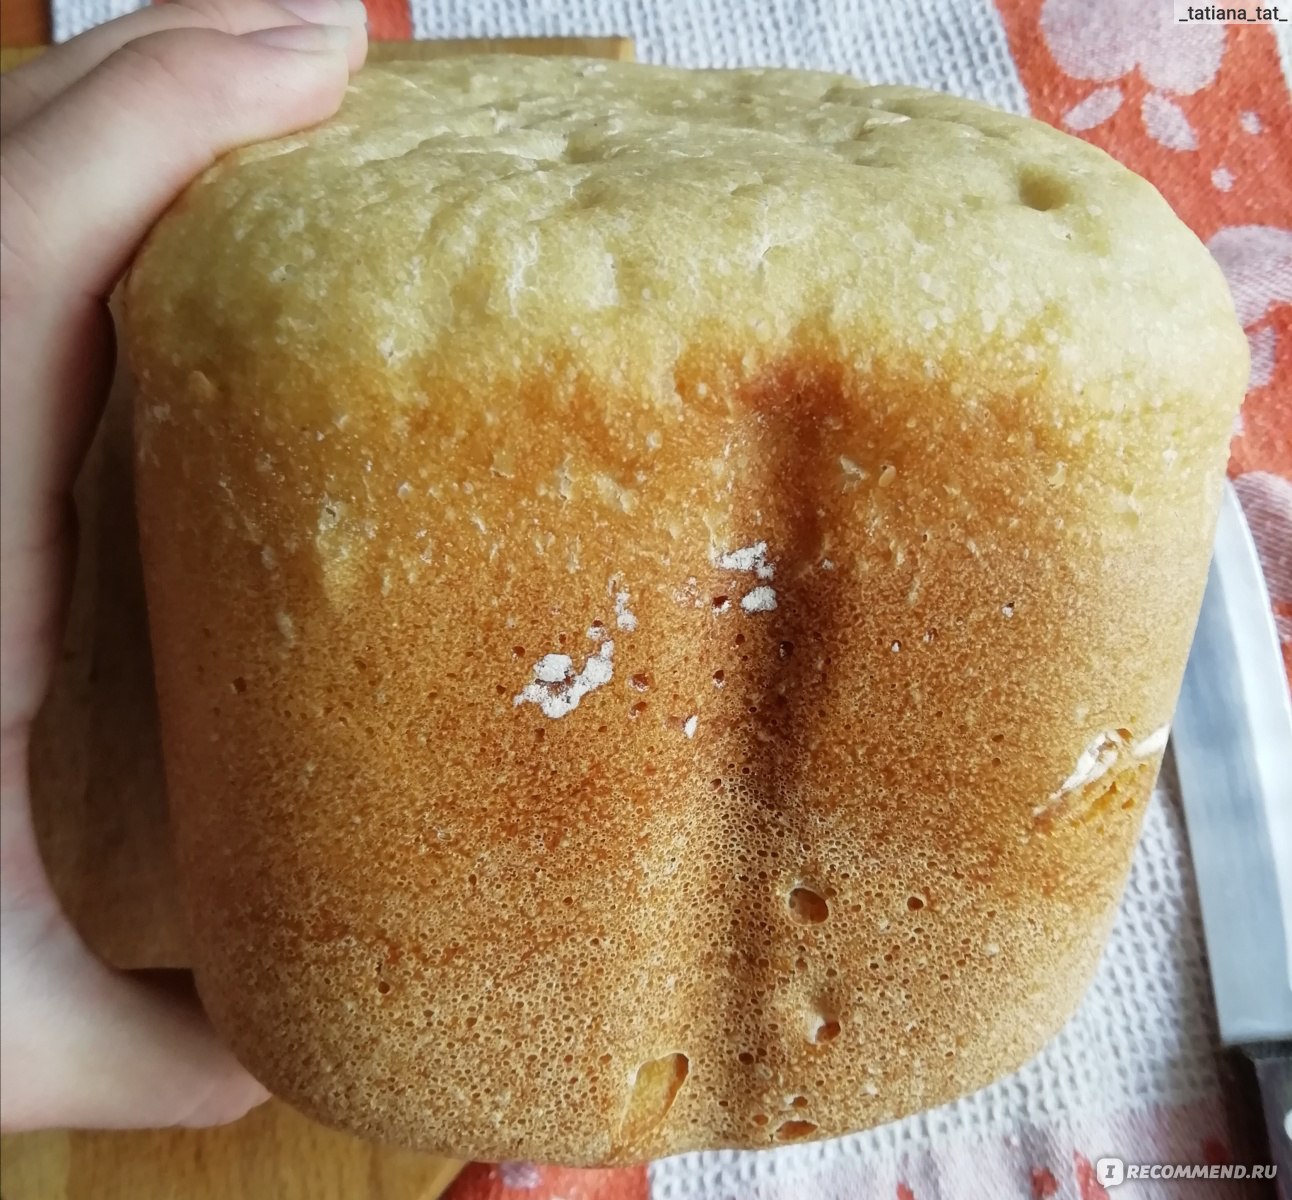 Хлебопечка горенье тесто. Хлебопечь Gorenje bm910wii - месильная лопасть. Хлеб в хлебопечке горение. Хлебопечь 910 горение. Рецепт хлеба в хлебопечке Gorenje bm910wii.